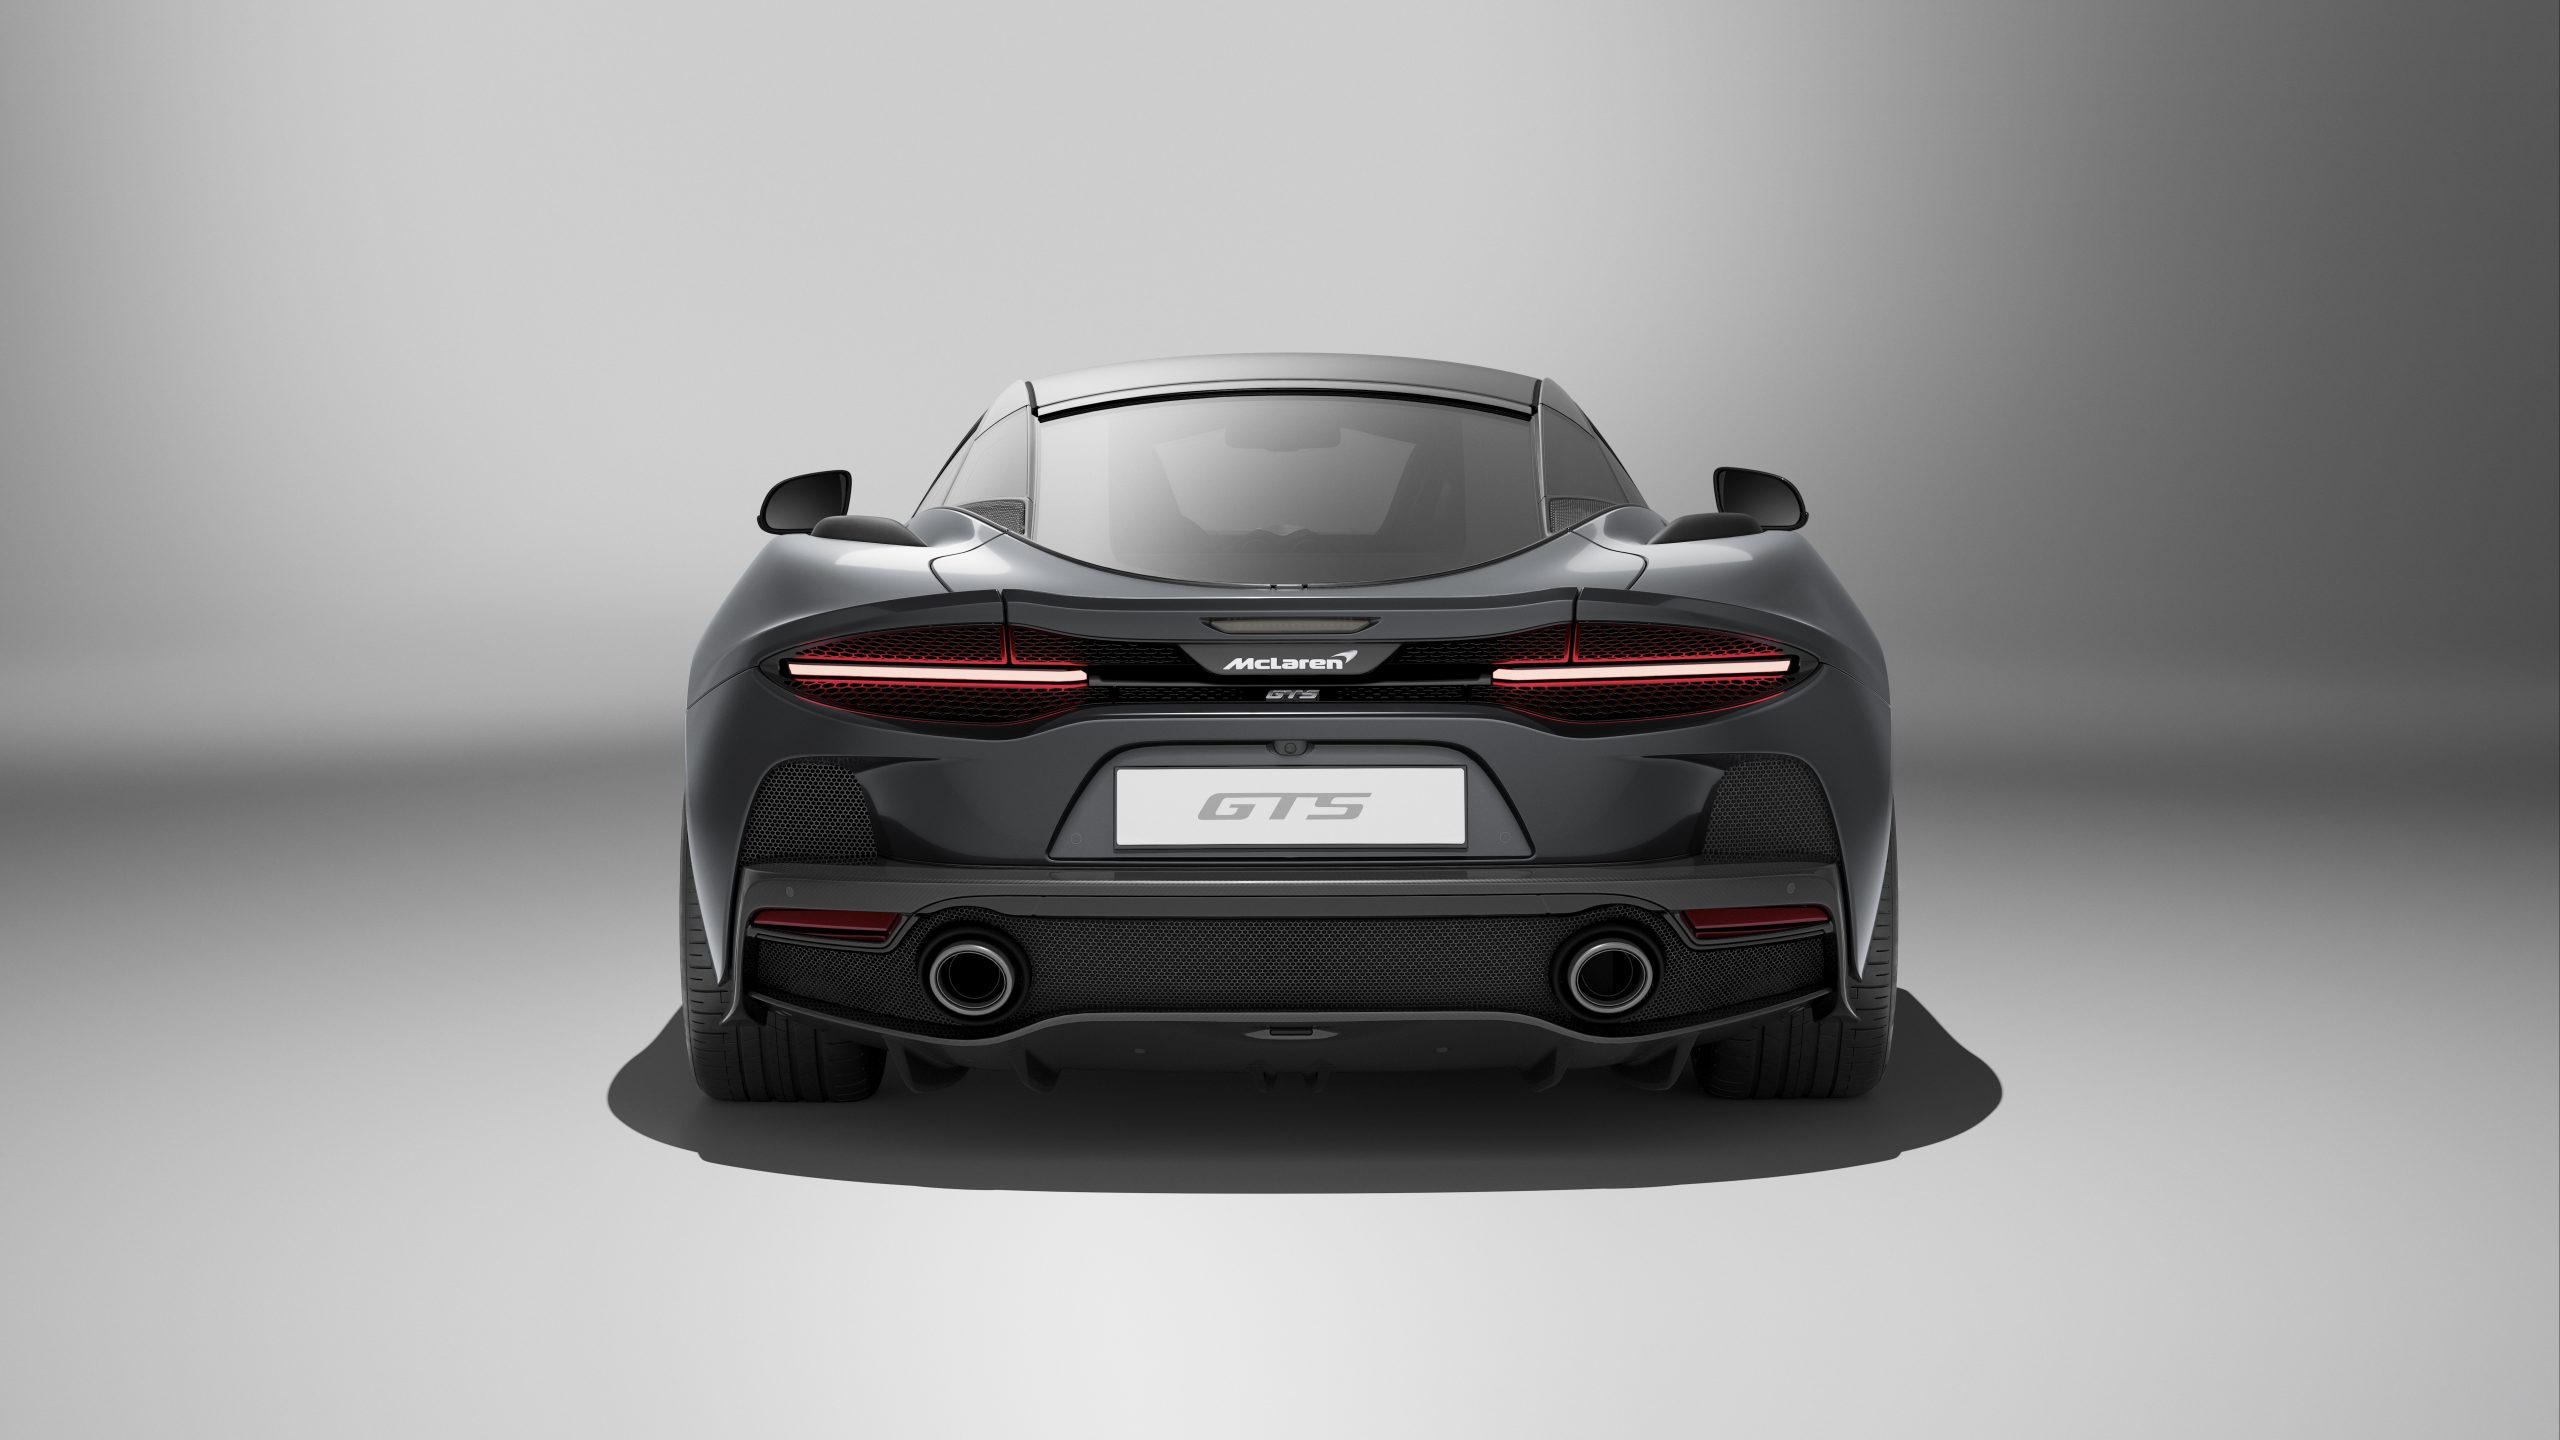 McLaren GTSDeadRearStudio